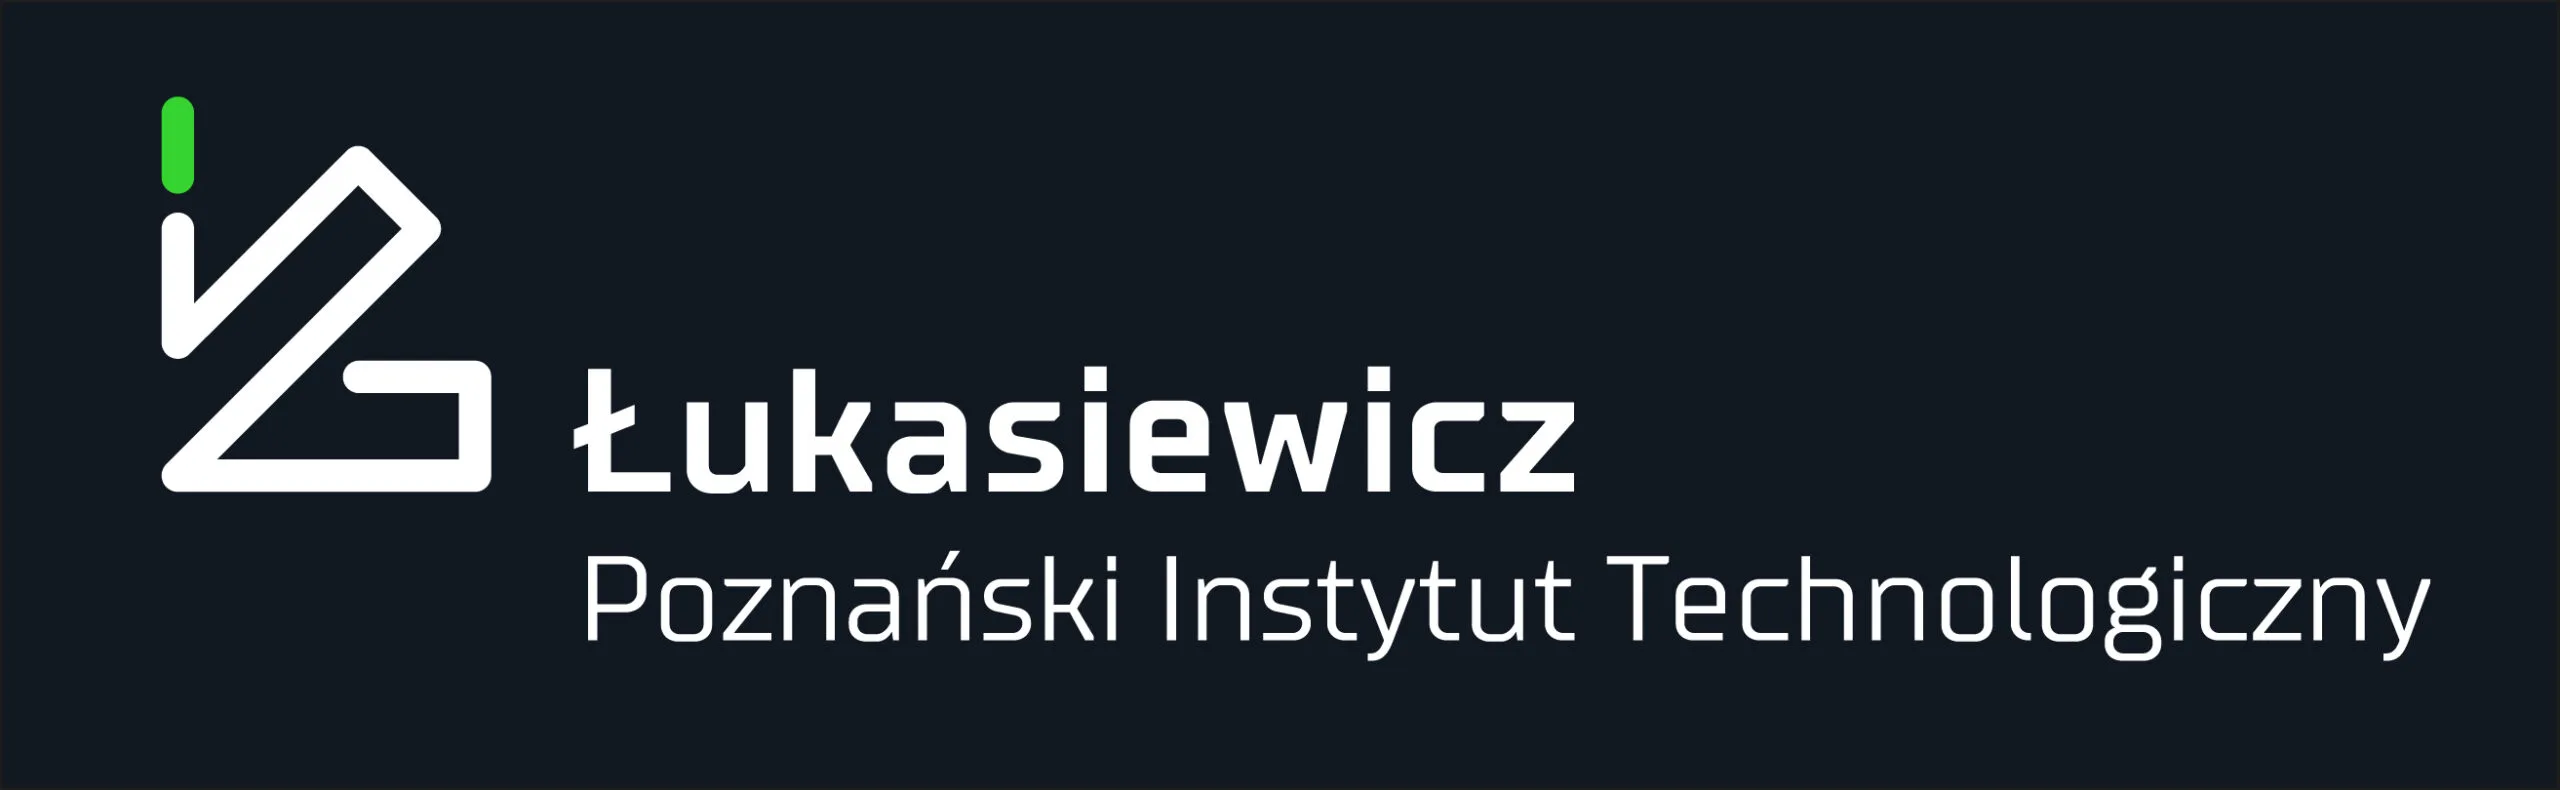 Łukasiewicz logo